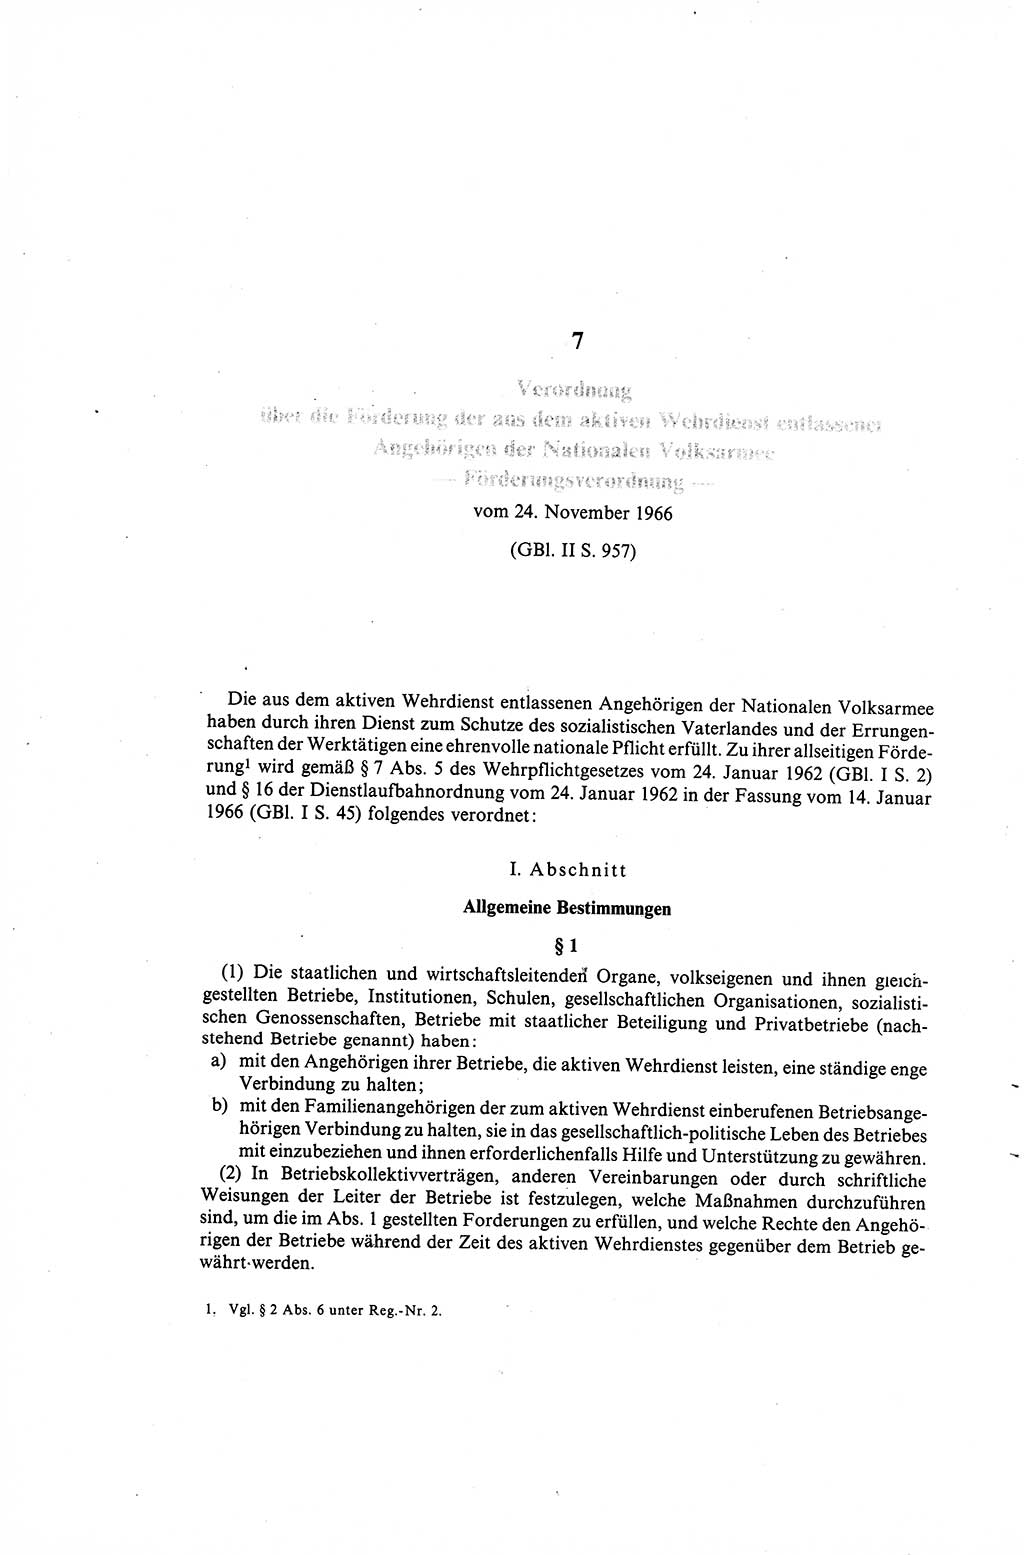 Gesetzbuch der Arbeit (GBA) und andere ausgewählte rechtliche Bestimmungen [Deutsche Demokratische Republik (DDR)] 1968, Seite 168 (GBA DDR 1968, S. 168)